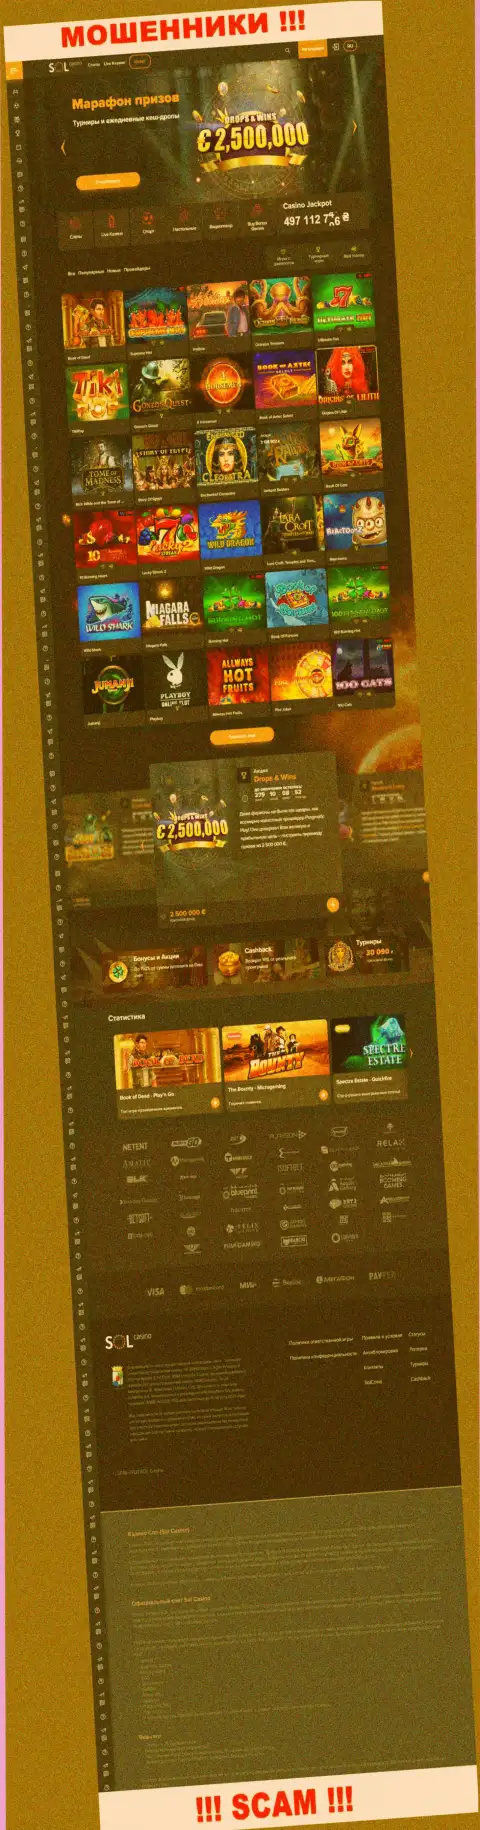 Главная страница официального онлайн-сервиса шулеров Sol Casino